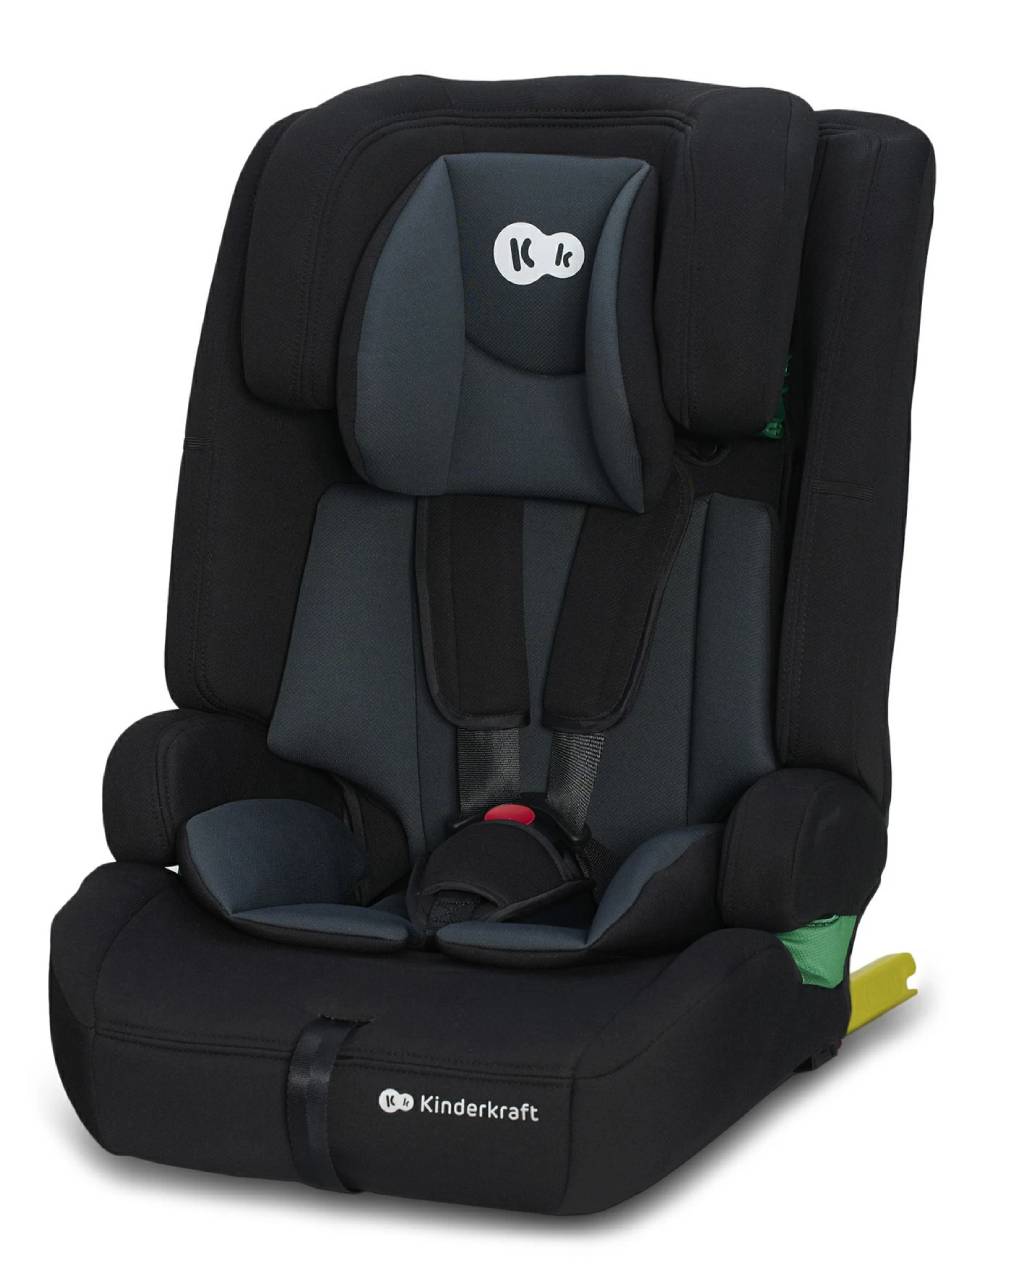 Kinderkraft κάθισμα αυτοκινήτου safety fix 2 i-size black - Kinderkraft